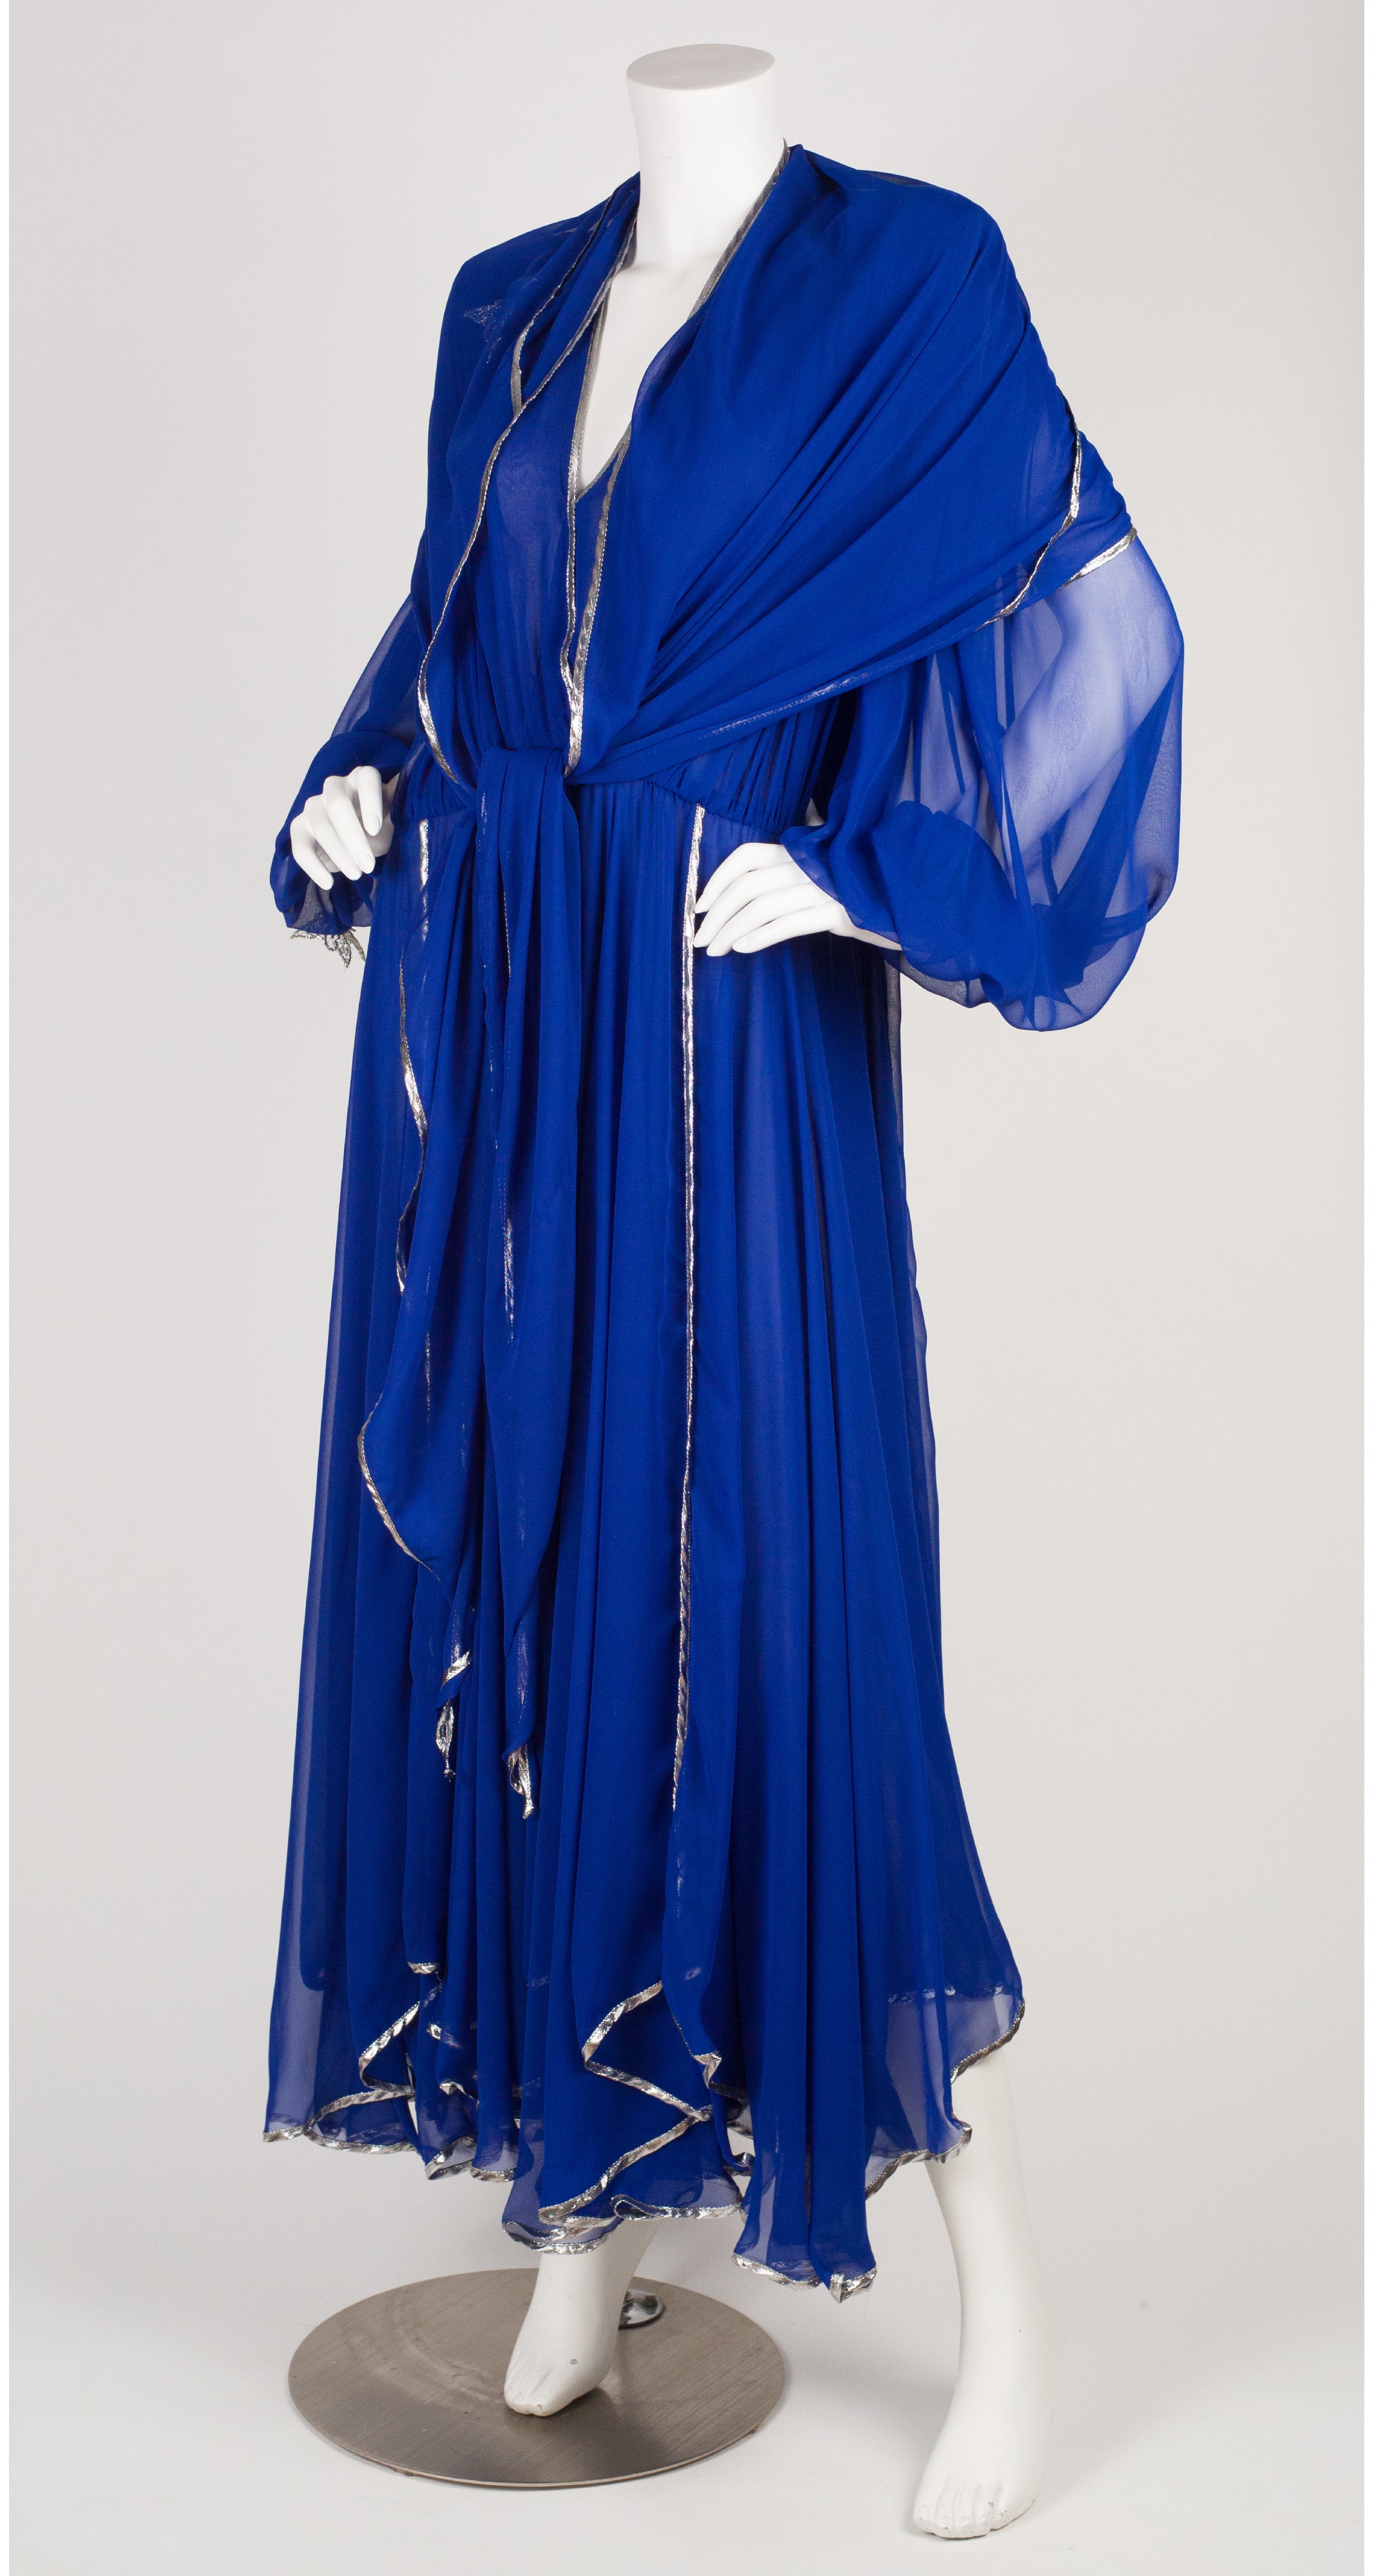 Wayne Clark 1980s Butterfly Appliqué Blue Chiffon Evening Dress ...